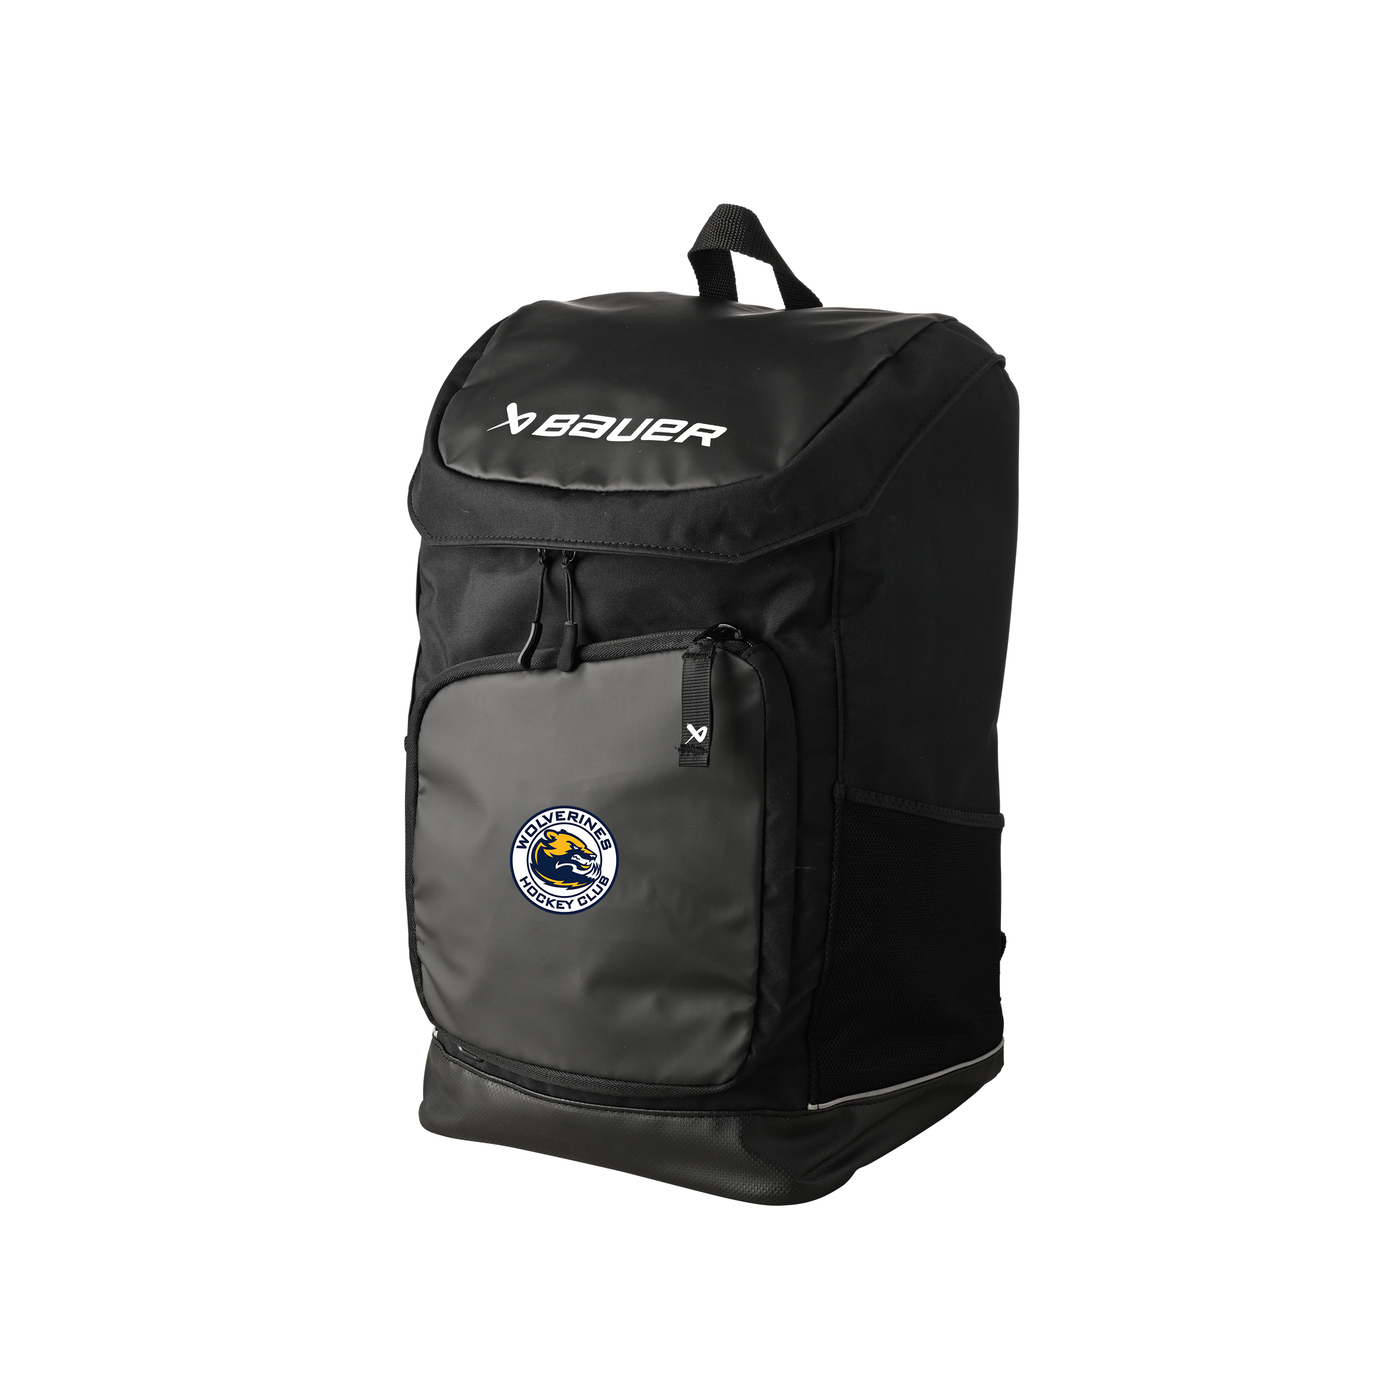 Bauer Pro Backpack - WV